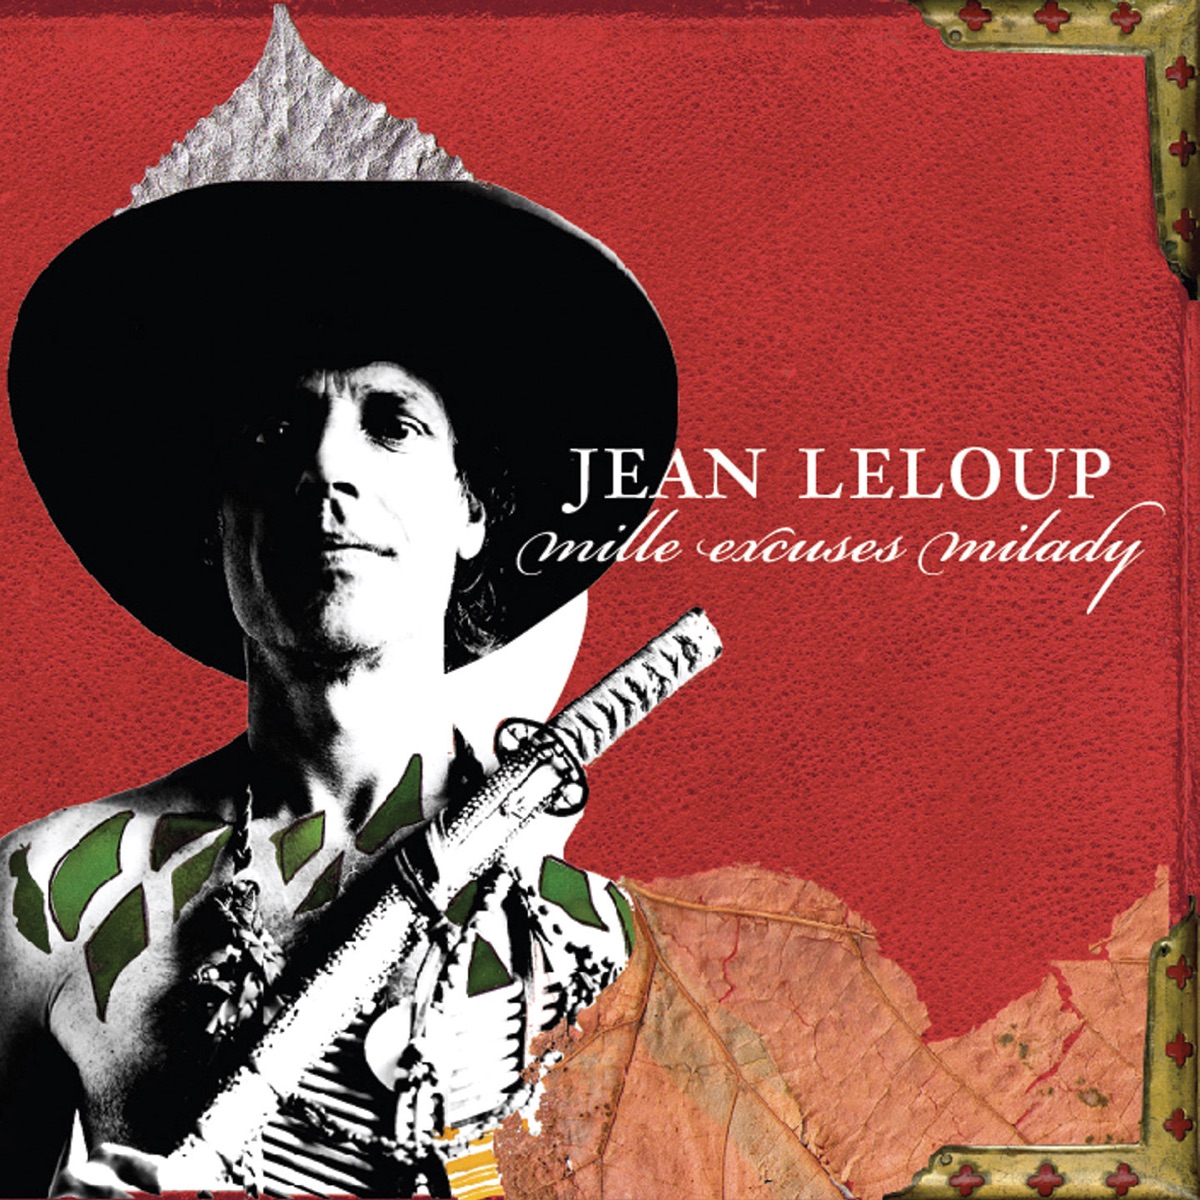 L'amour est sans pitié by Jean Leloup on Apple Music